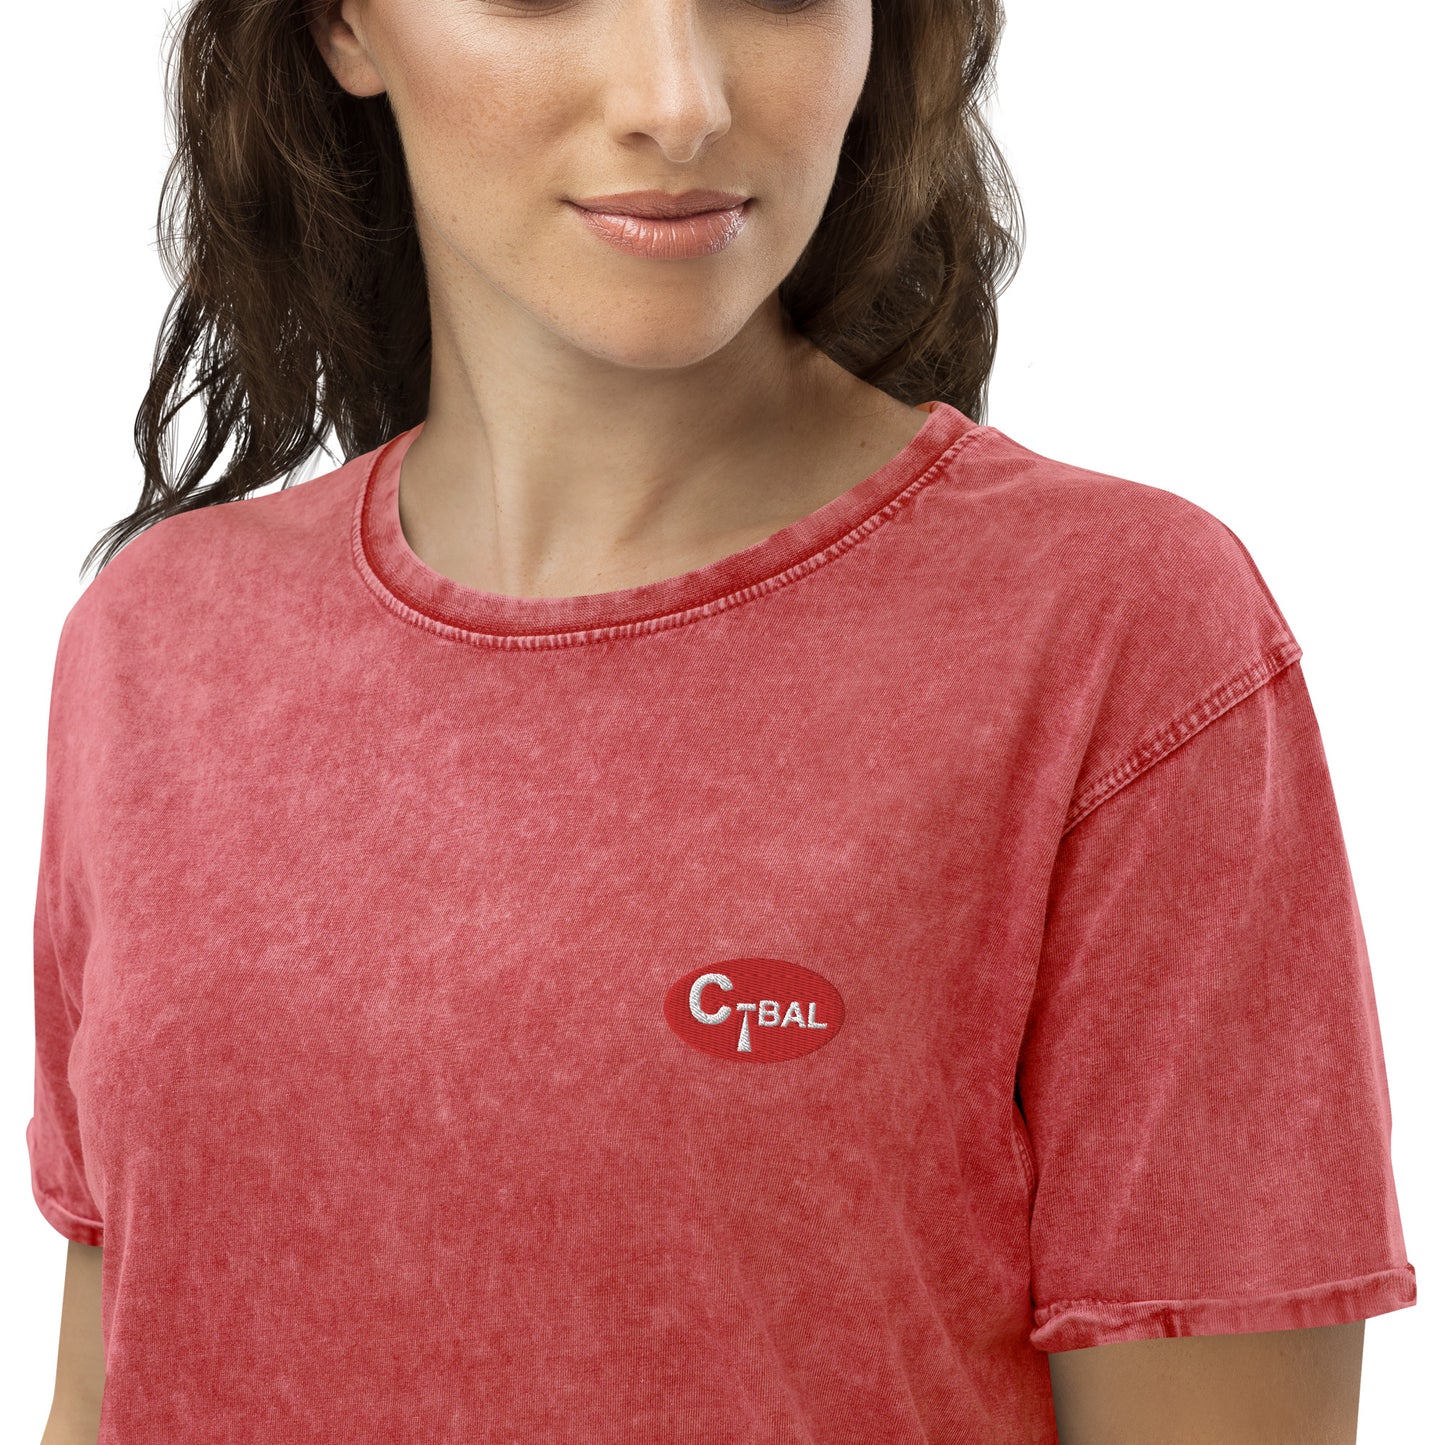 B002 - 牛仔T恤（C-BAL : 紅/刺繡Logo）